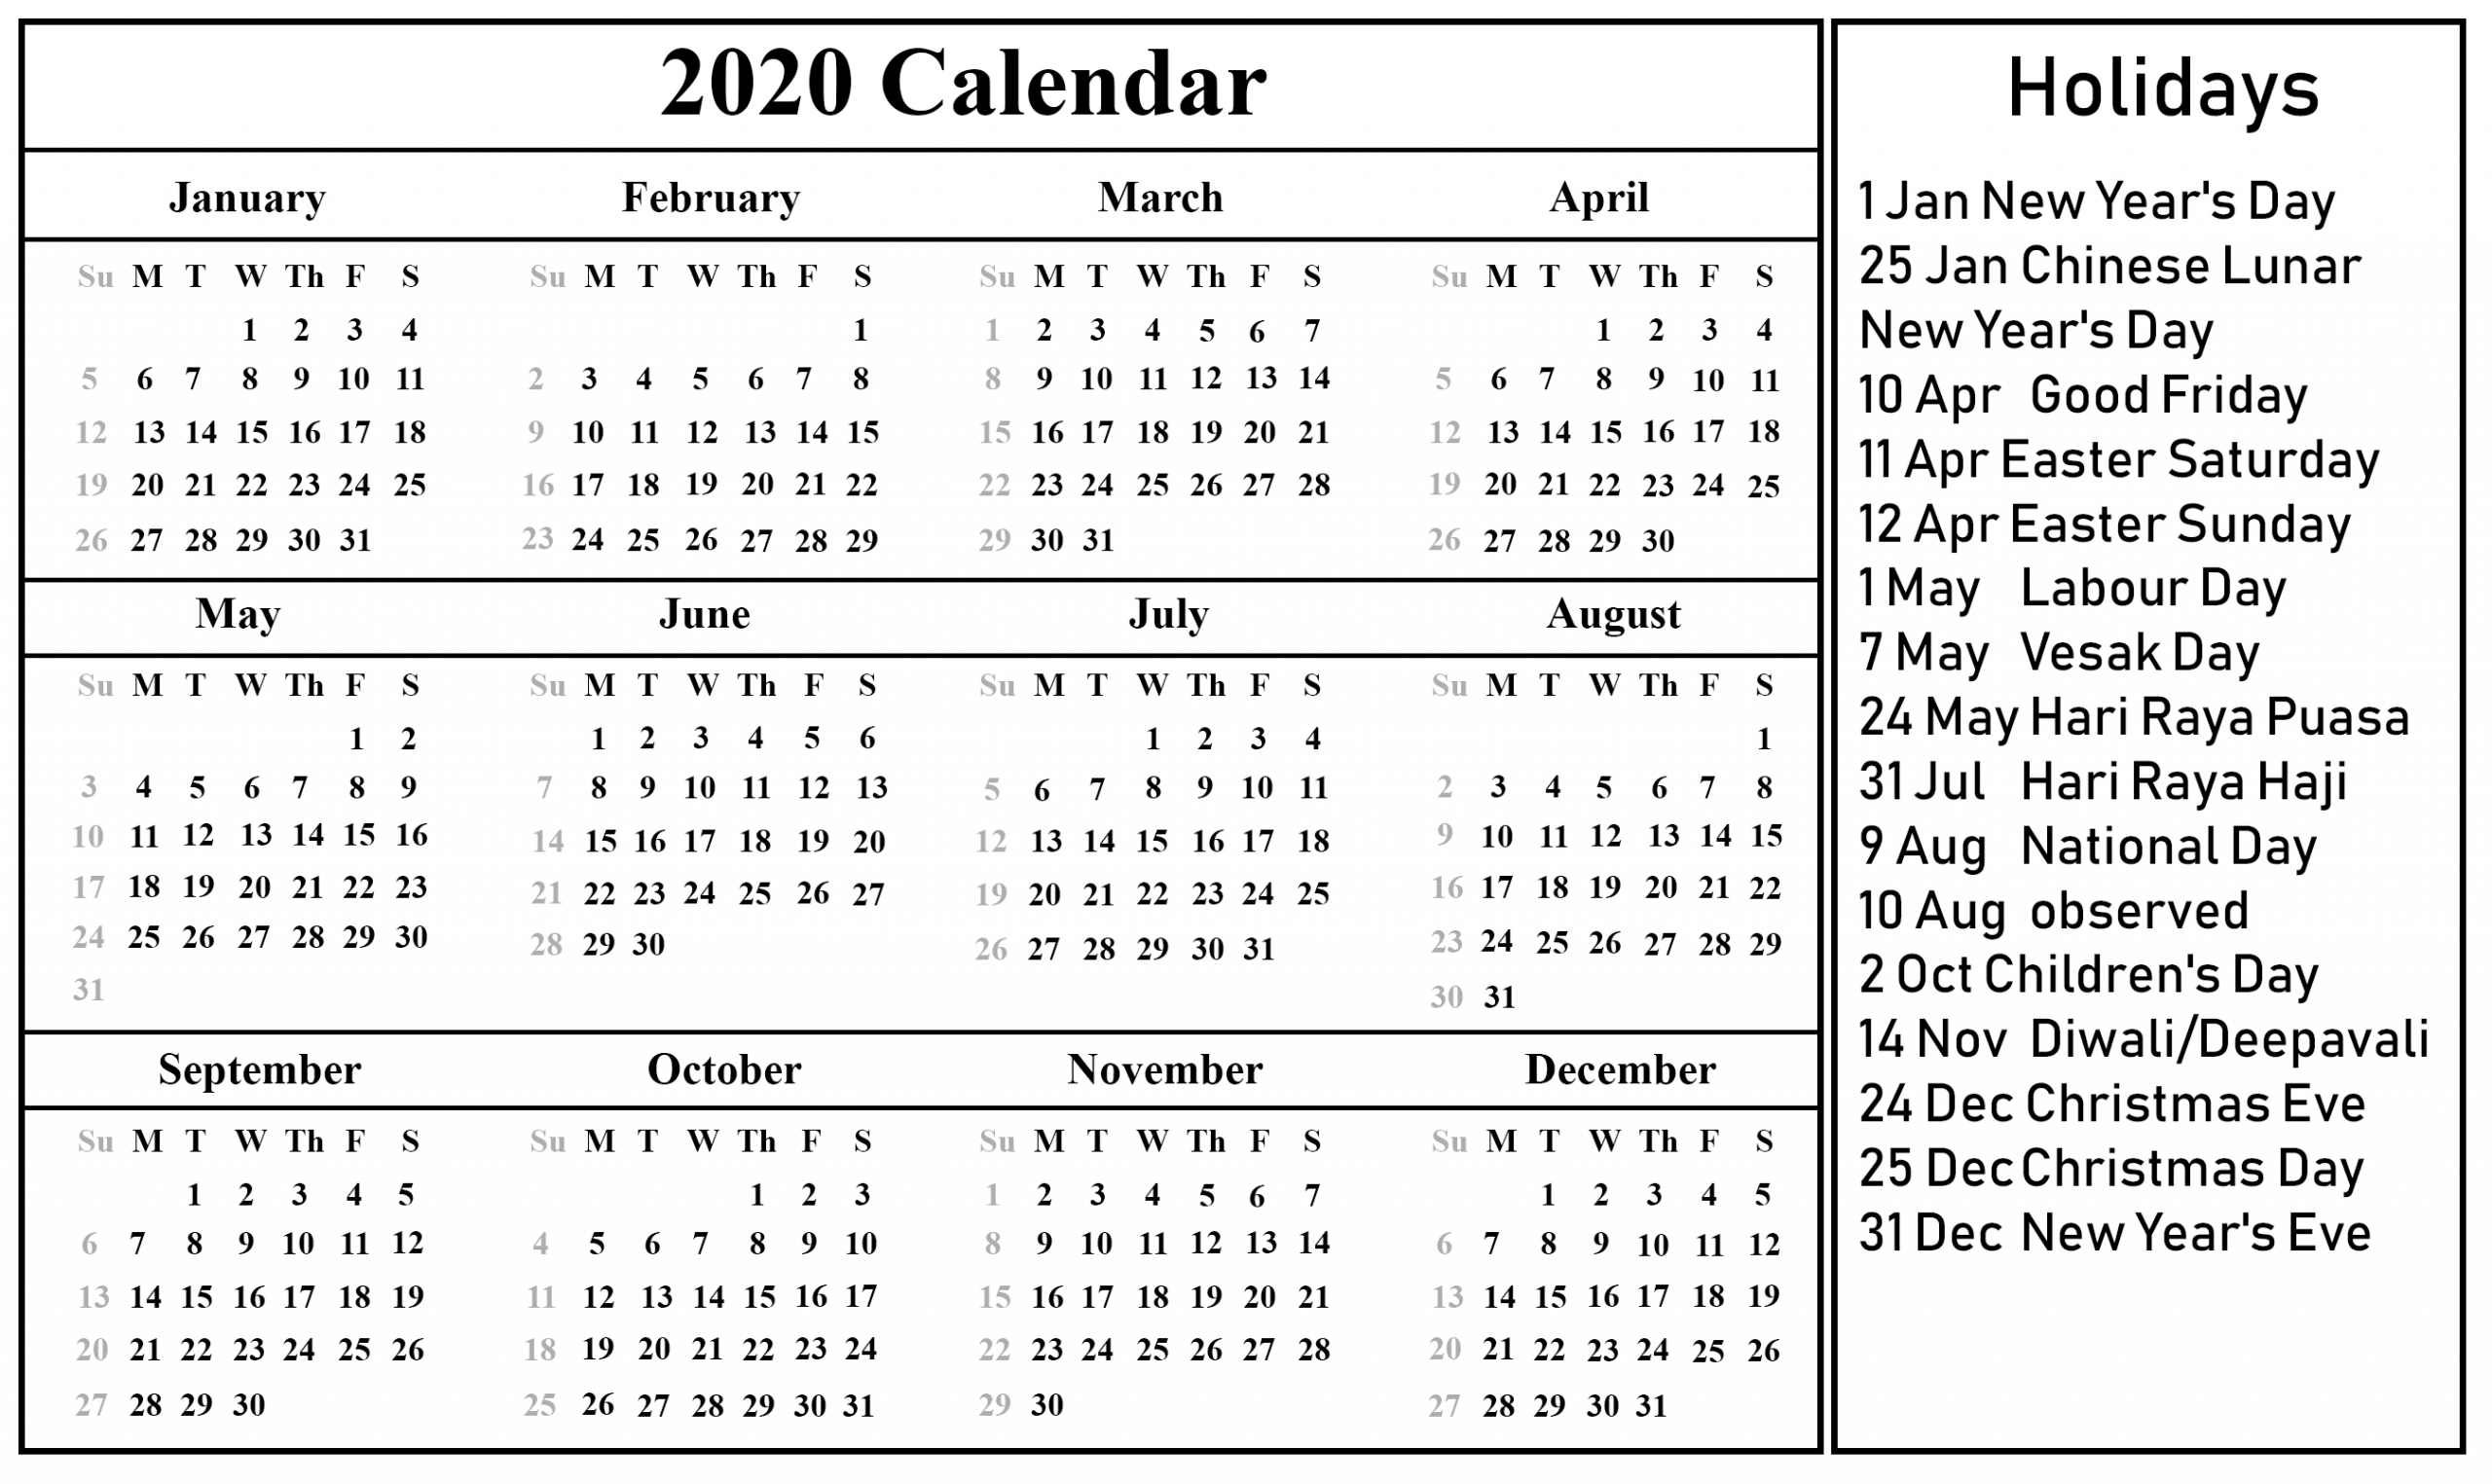 Get Aug 2021 Calendar Festival